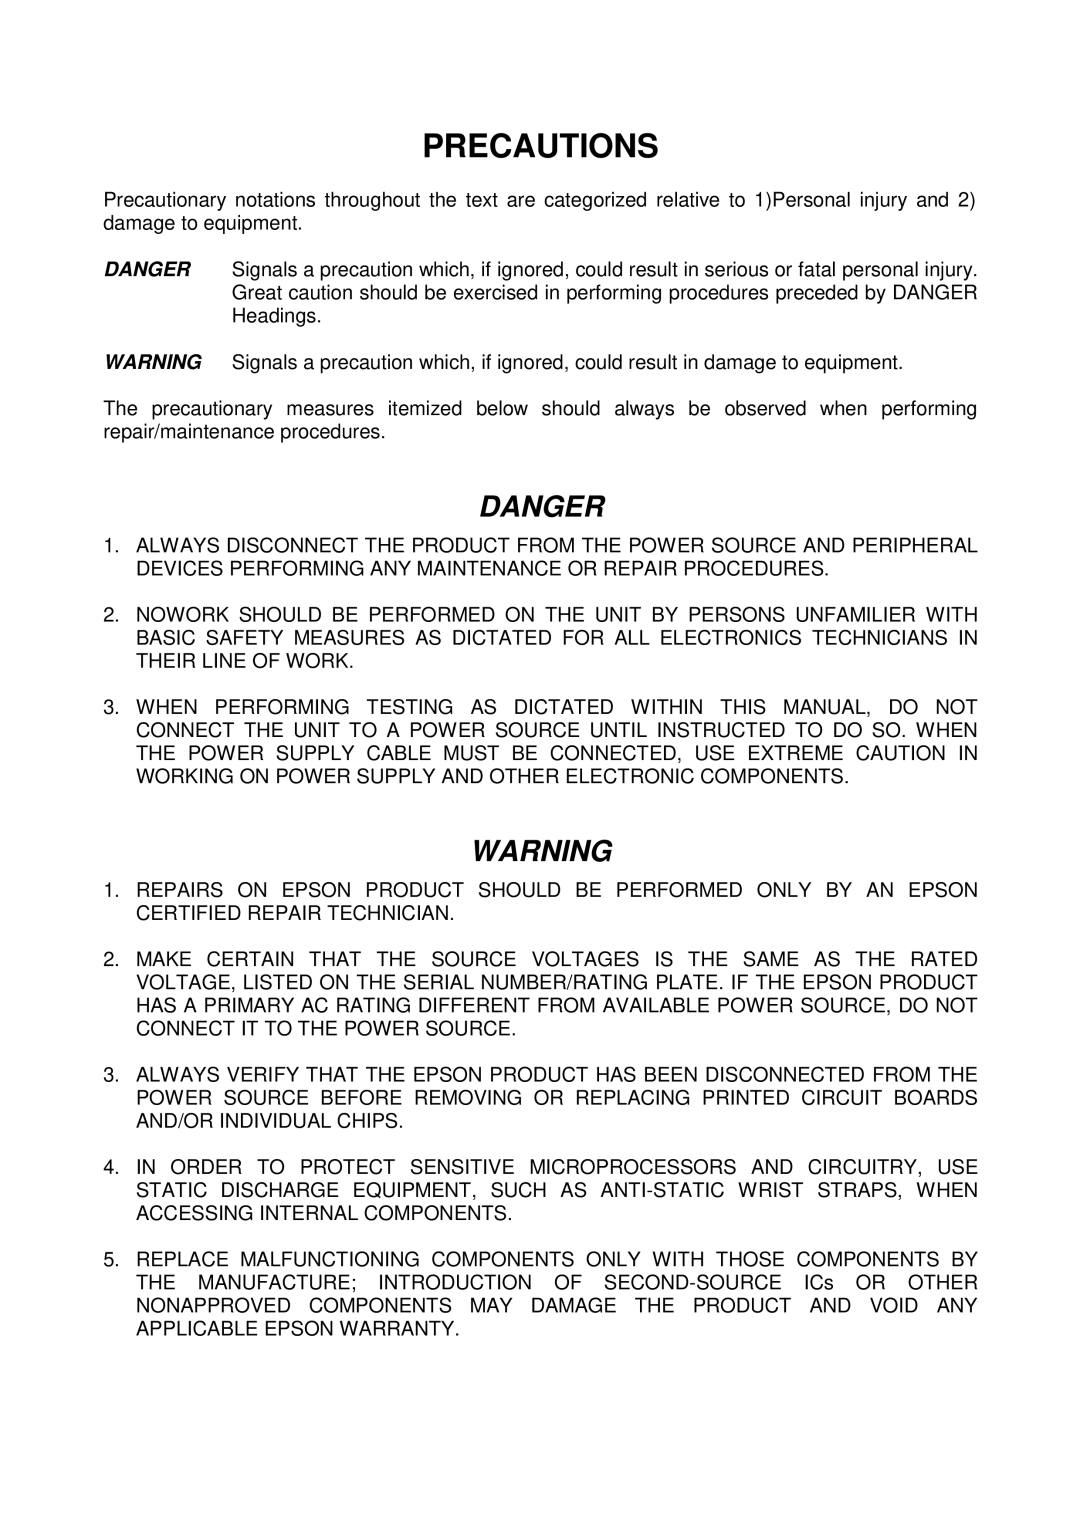 Epson EX, 700 manual Precautions, Danger 